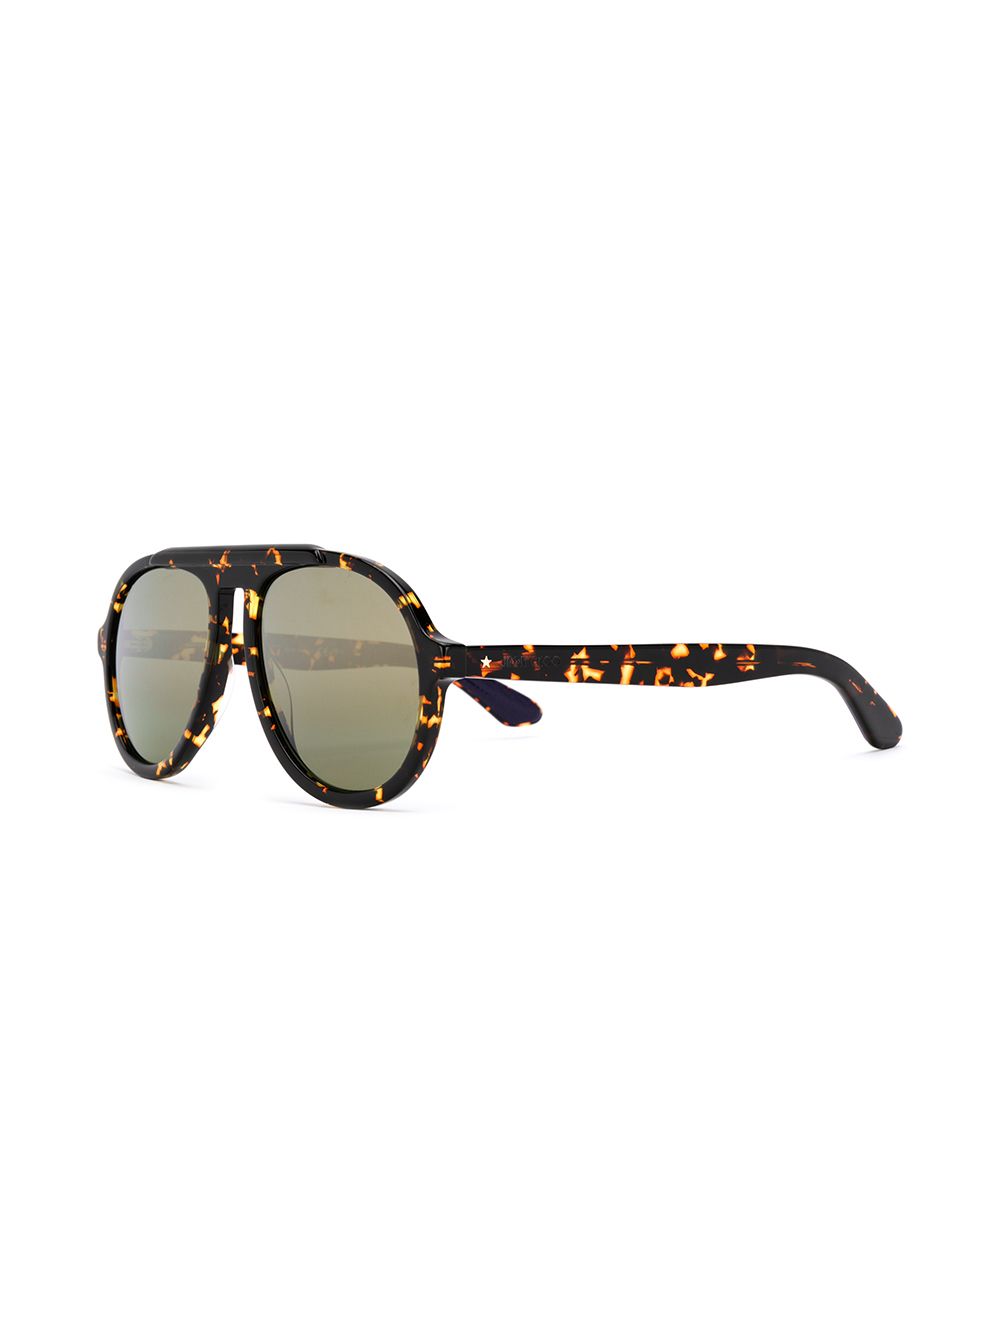 фото Jimmy choo eyewear солнцезащитные очки-авиаторы в оправе черепаховой расцветки